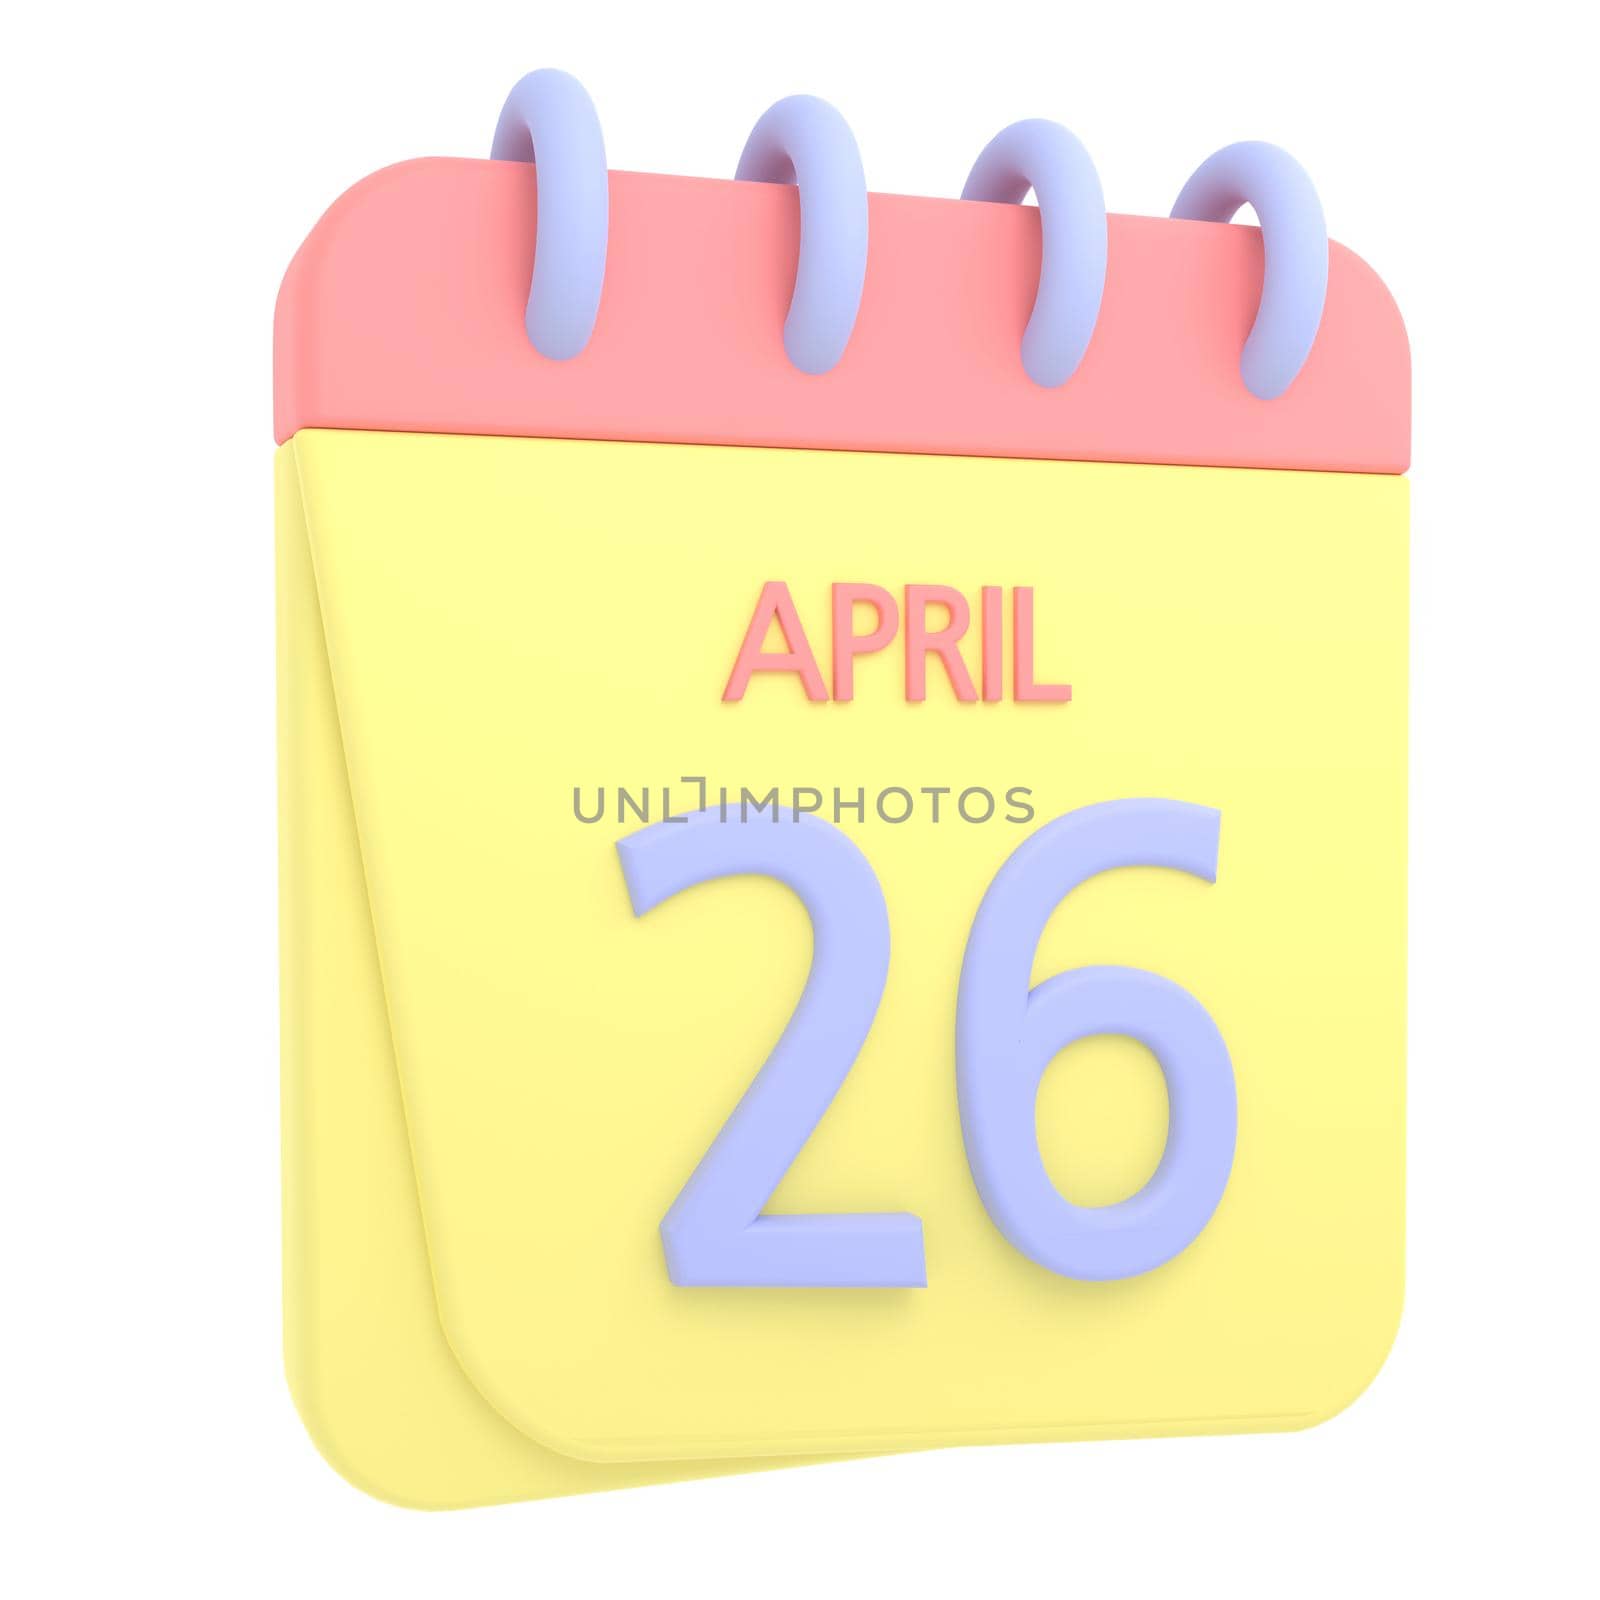 26th April 3D calendar icon by AnnaMarin